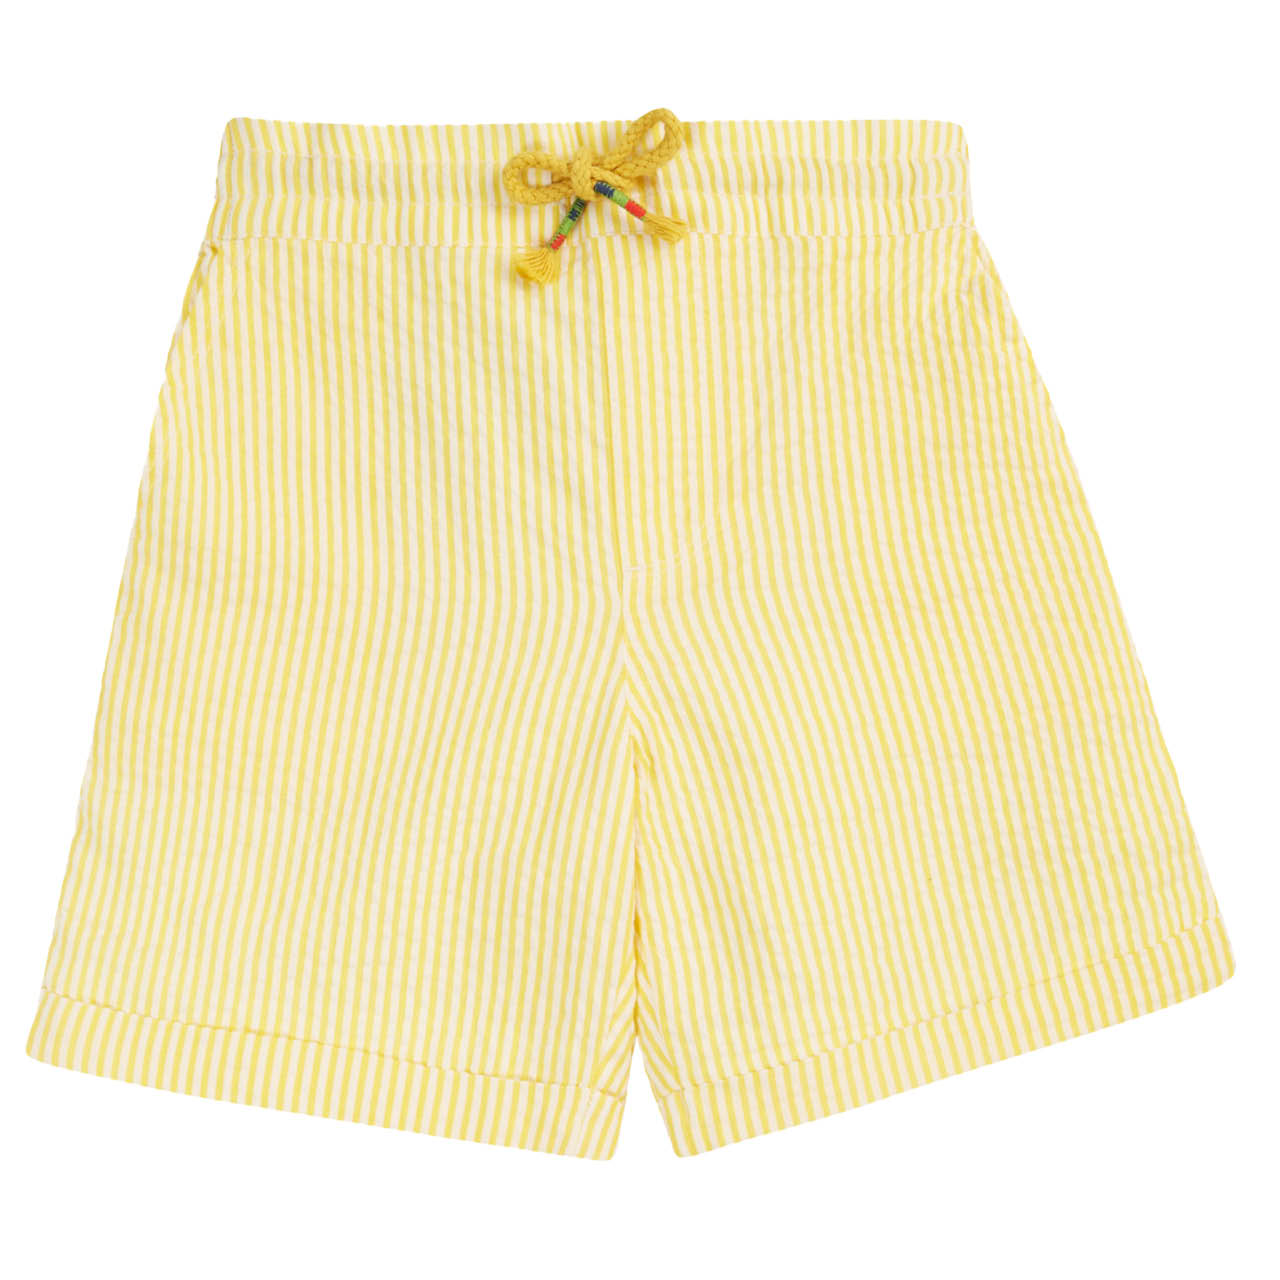 Leichte gelbe Streifen Shorts